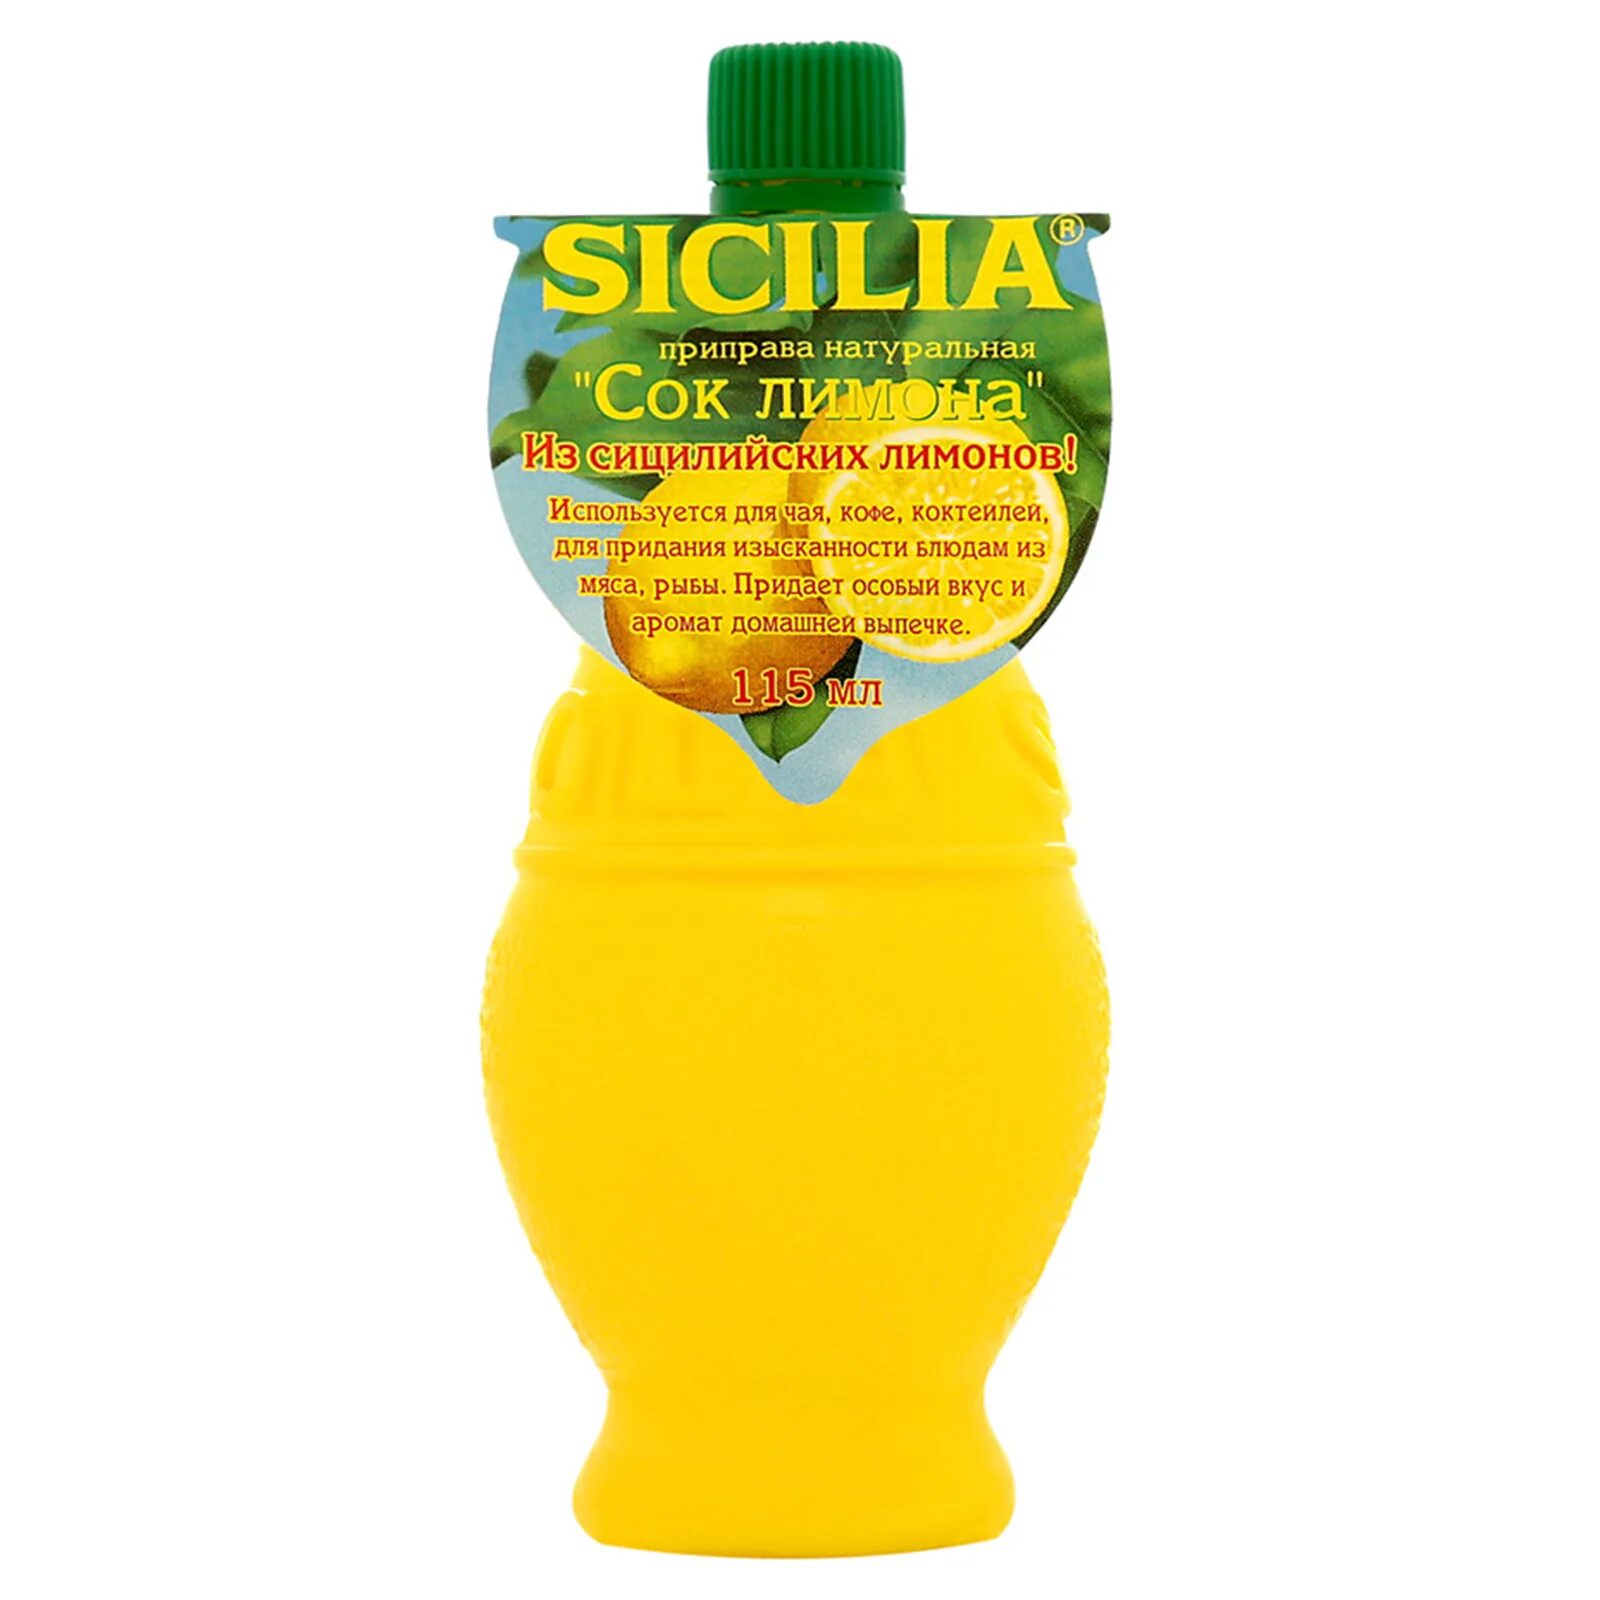 Сок лимона Sicilia, 115 мл. Sicilia приправа натуральная сок лимона 115 г. Концентрат лимона